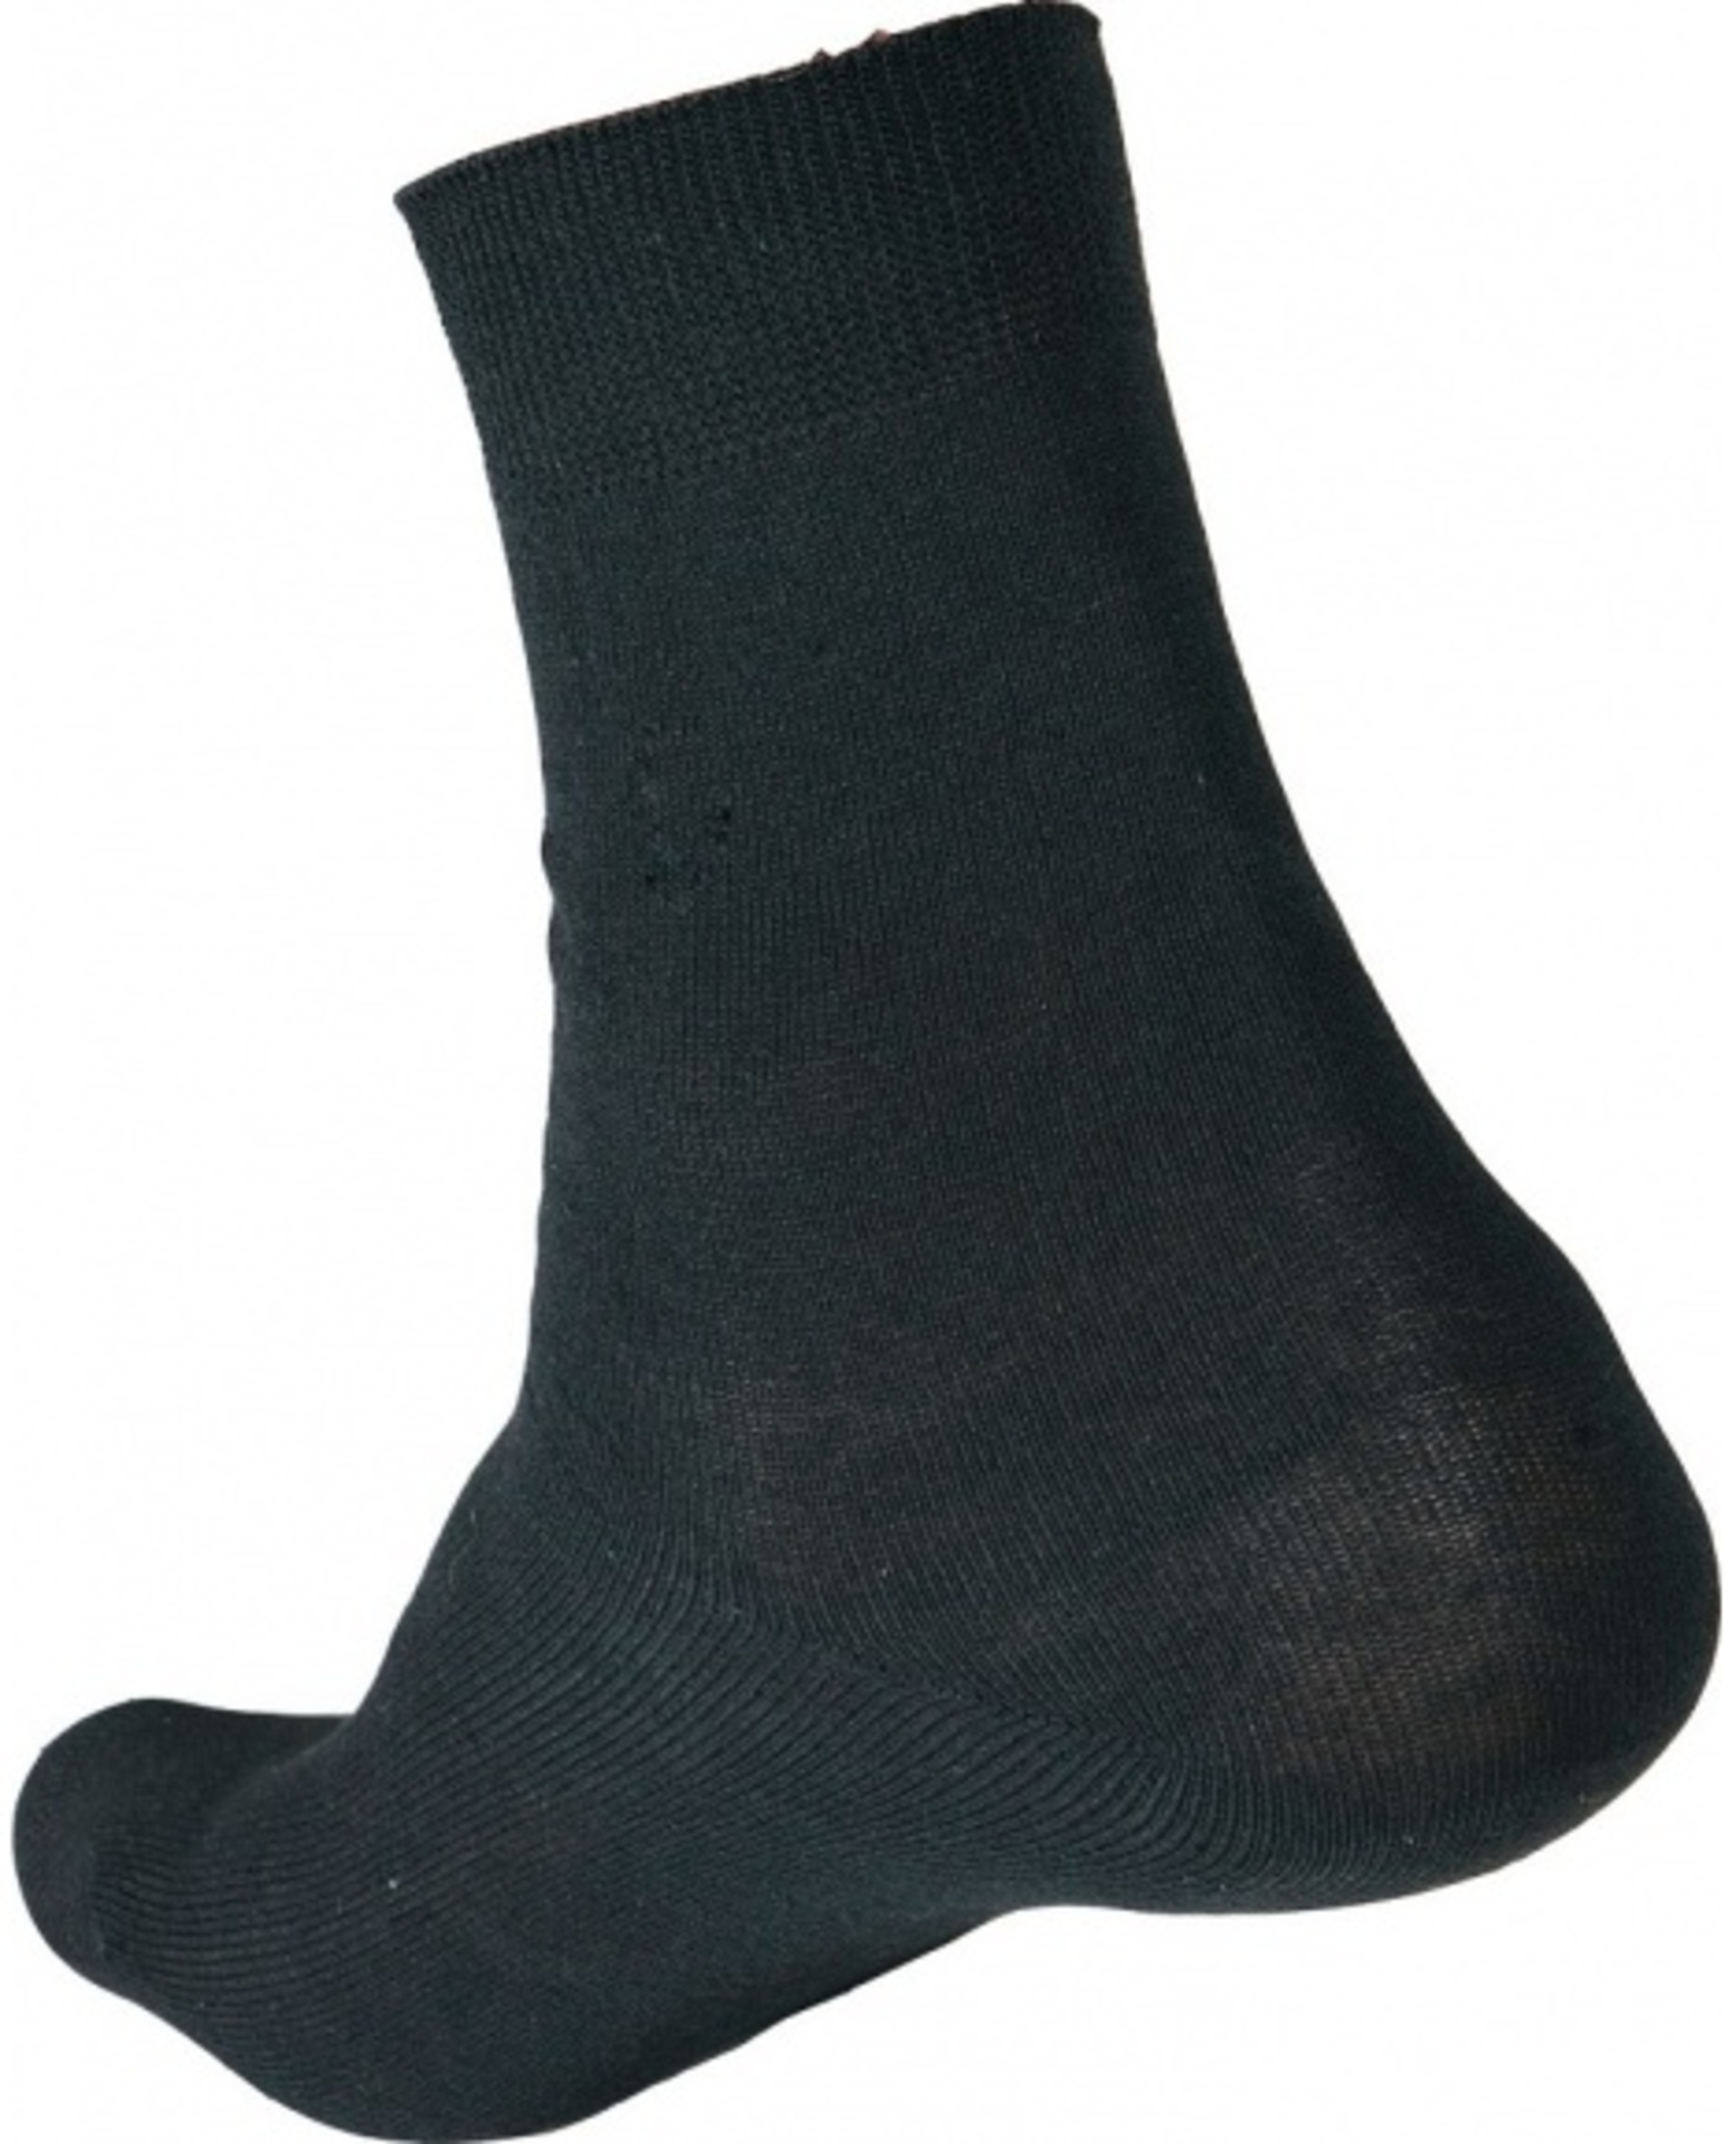 Ponožky CRV MERGE 46